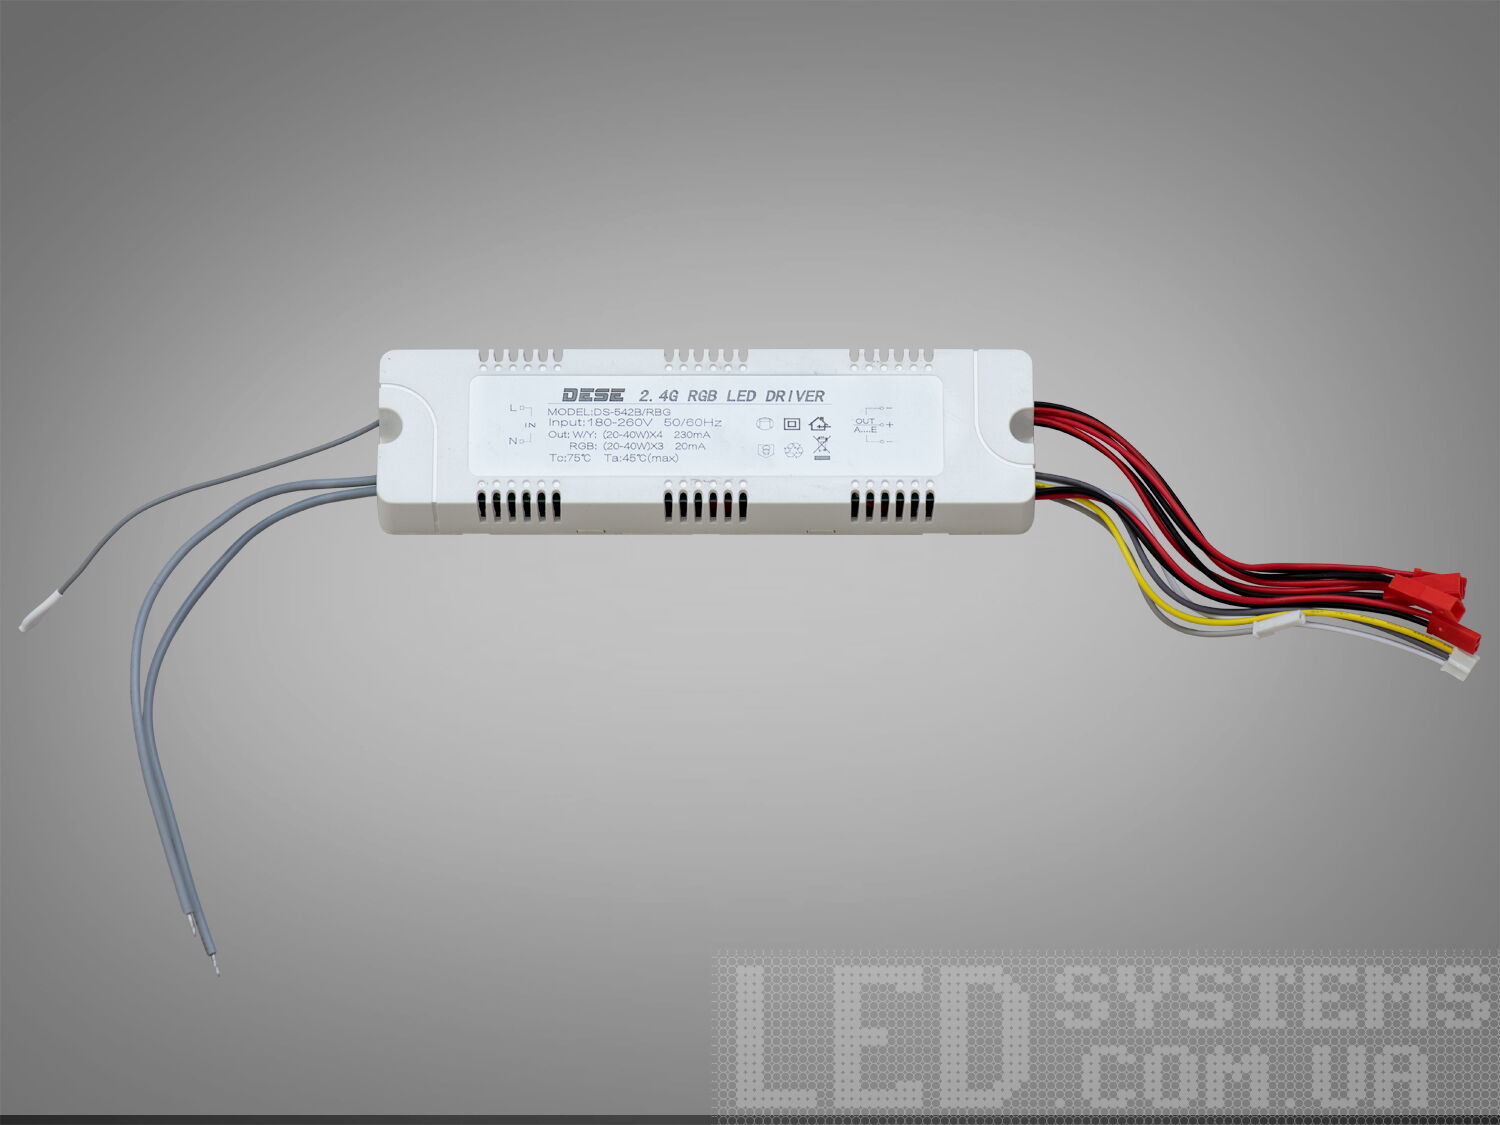 Універсальний комплект для переобладнання світлодіодних люстр.

Блок приймача пульта встановлюється місце рідного блоку живлення світлодіодної люстри. Цей комплект може бути використаний на люстрах з робочим струмом світлодіодних модулів від 210 до 300 мА. Діммер має 4 вихідні канали для підключення до стандартної світлодіодної люстри, схема підключення 